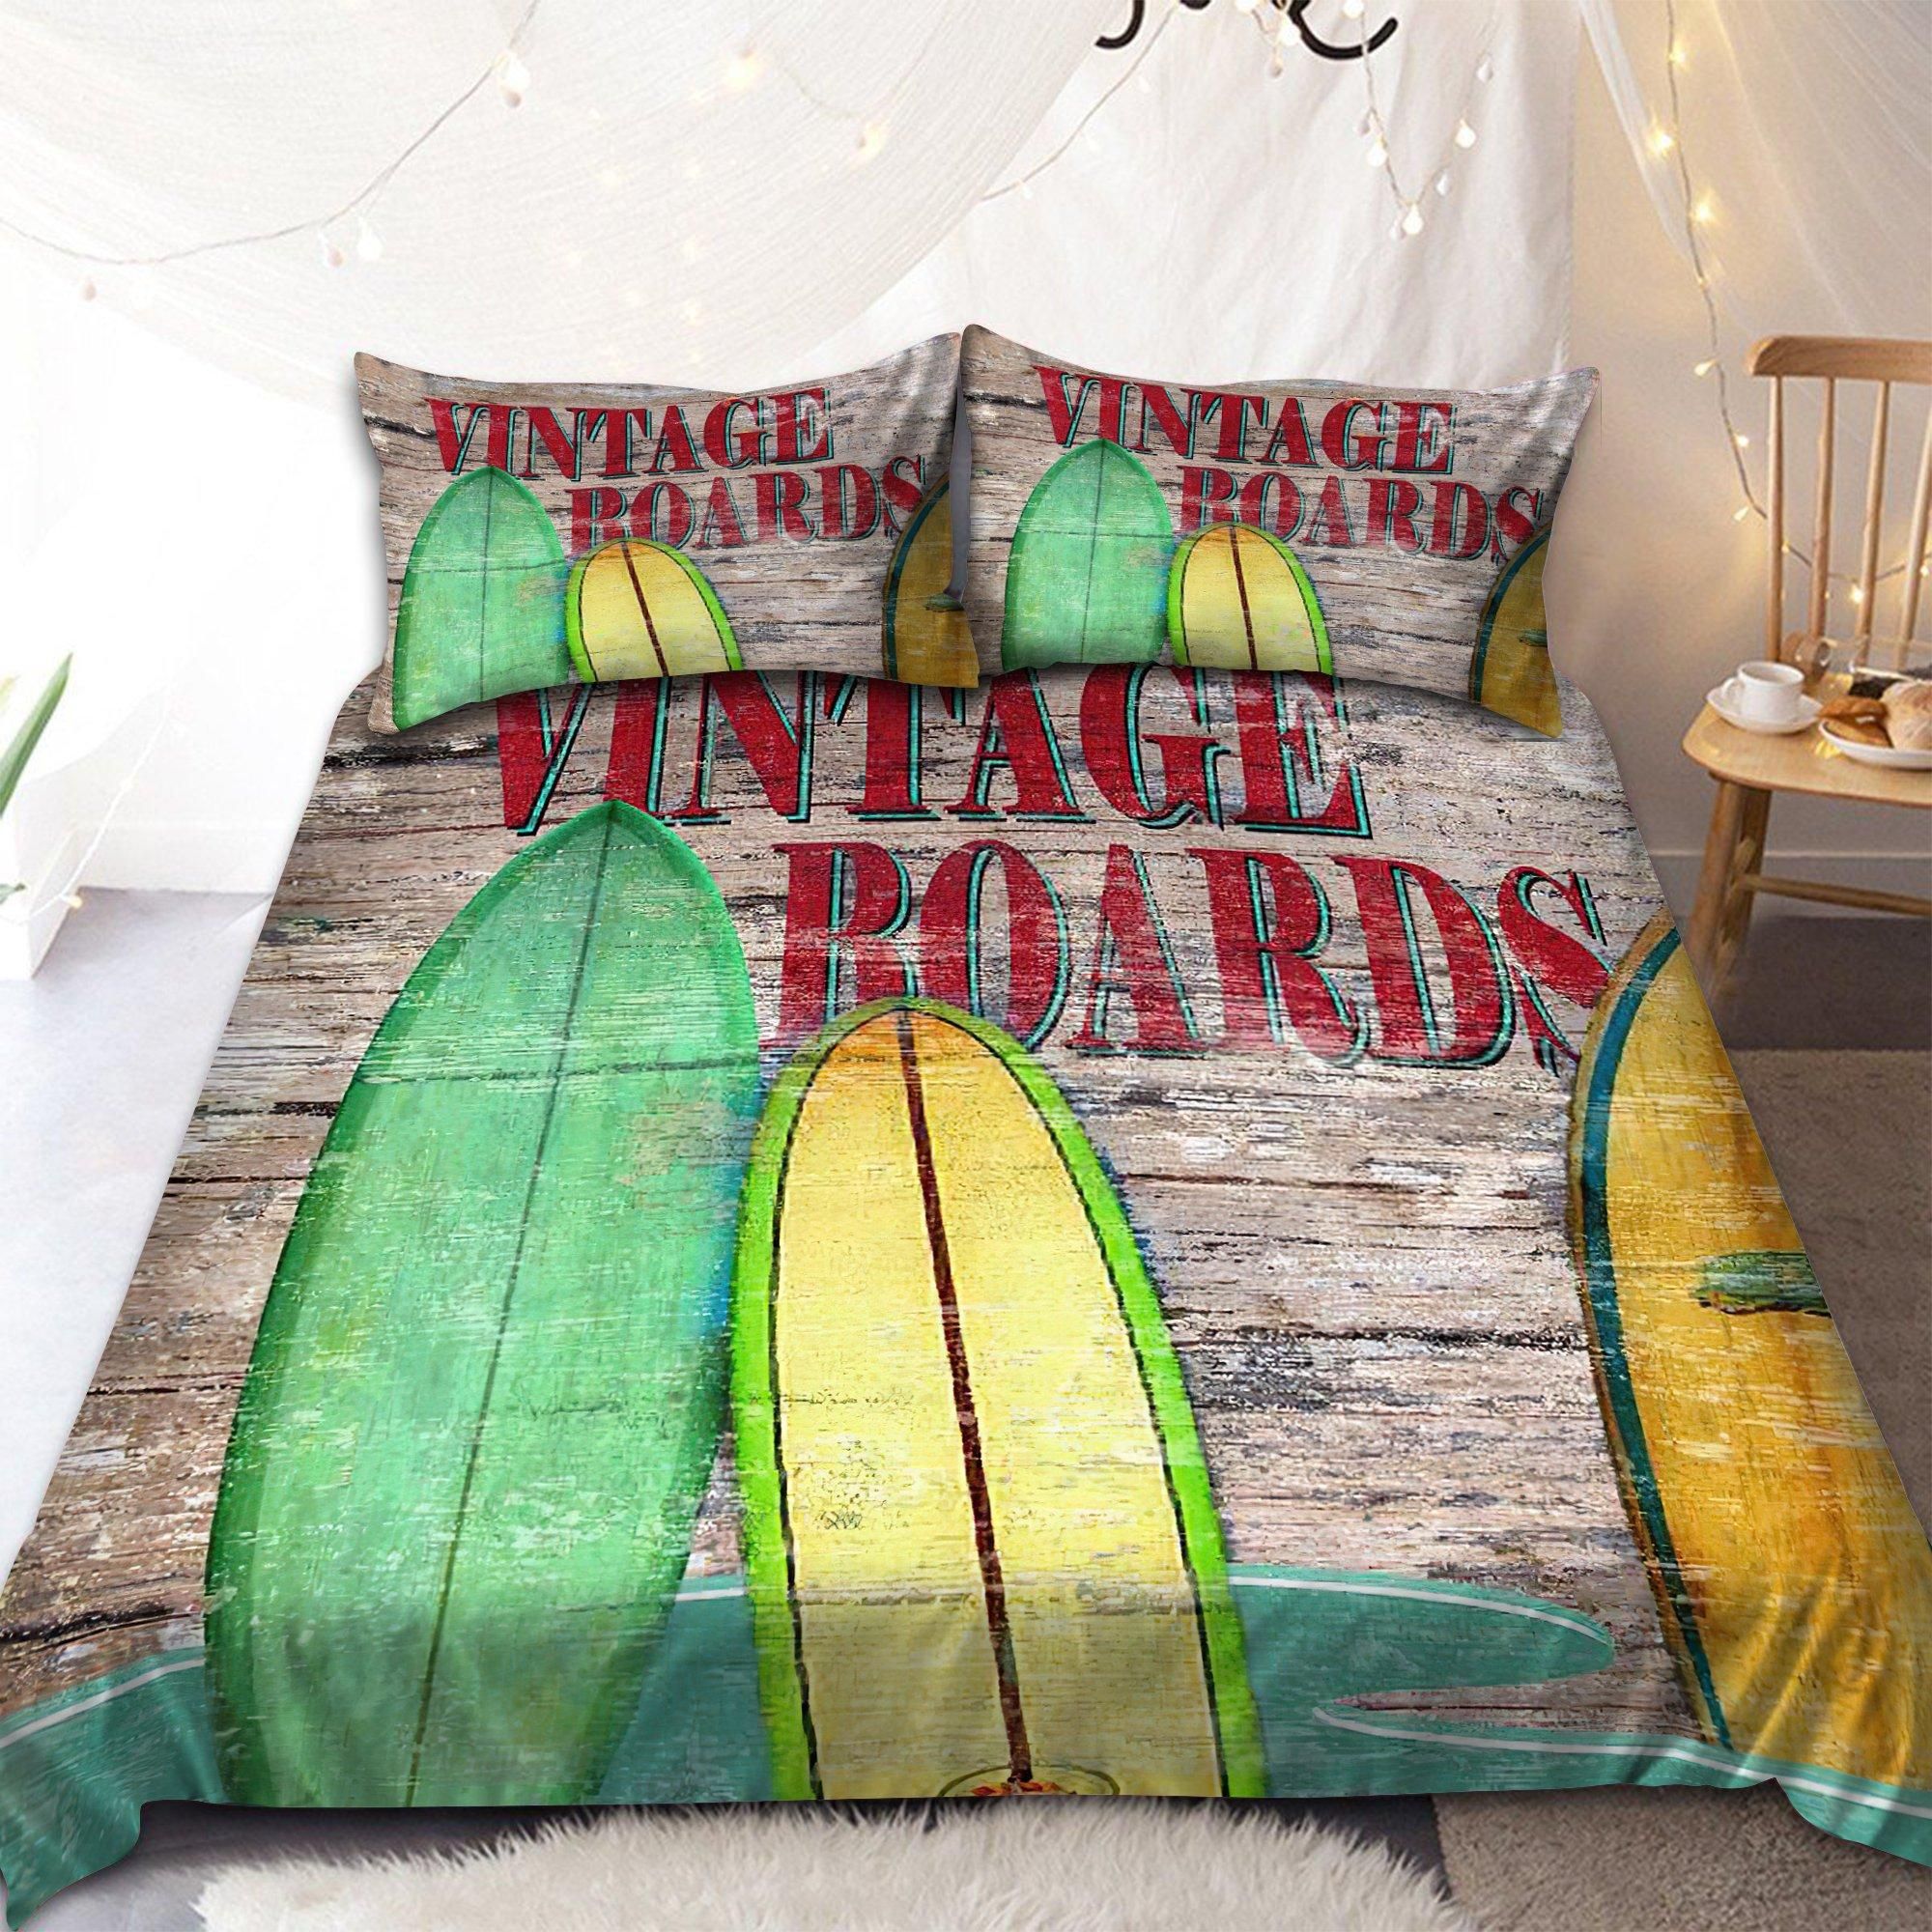 Surfboard Vintage Board Duvet Cover Bedding Set